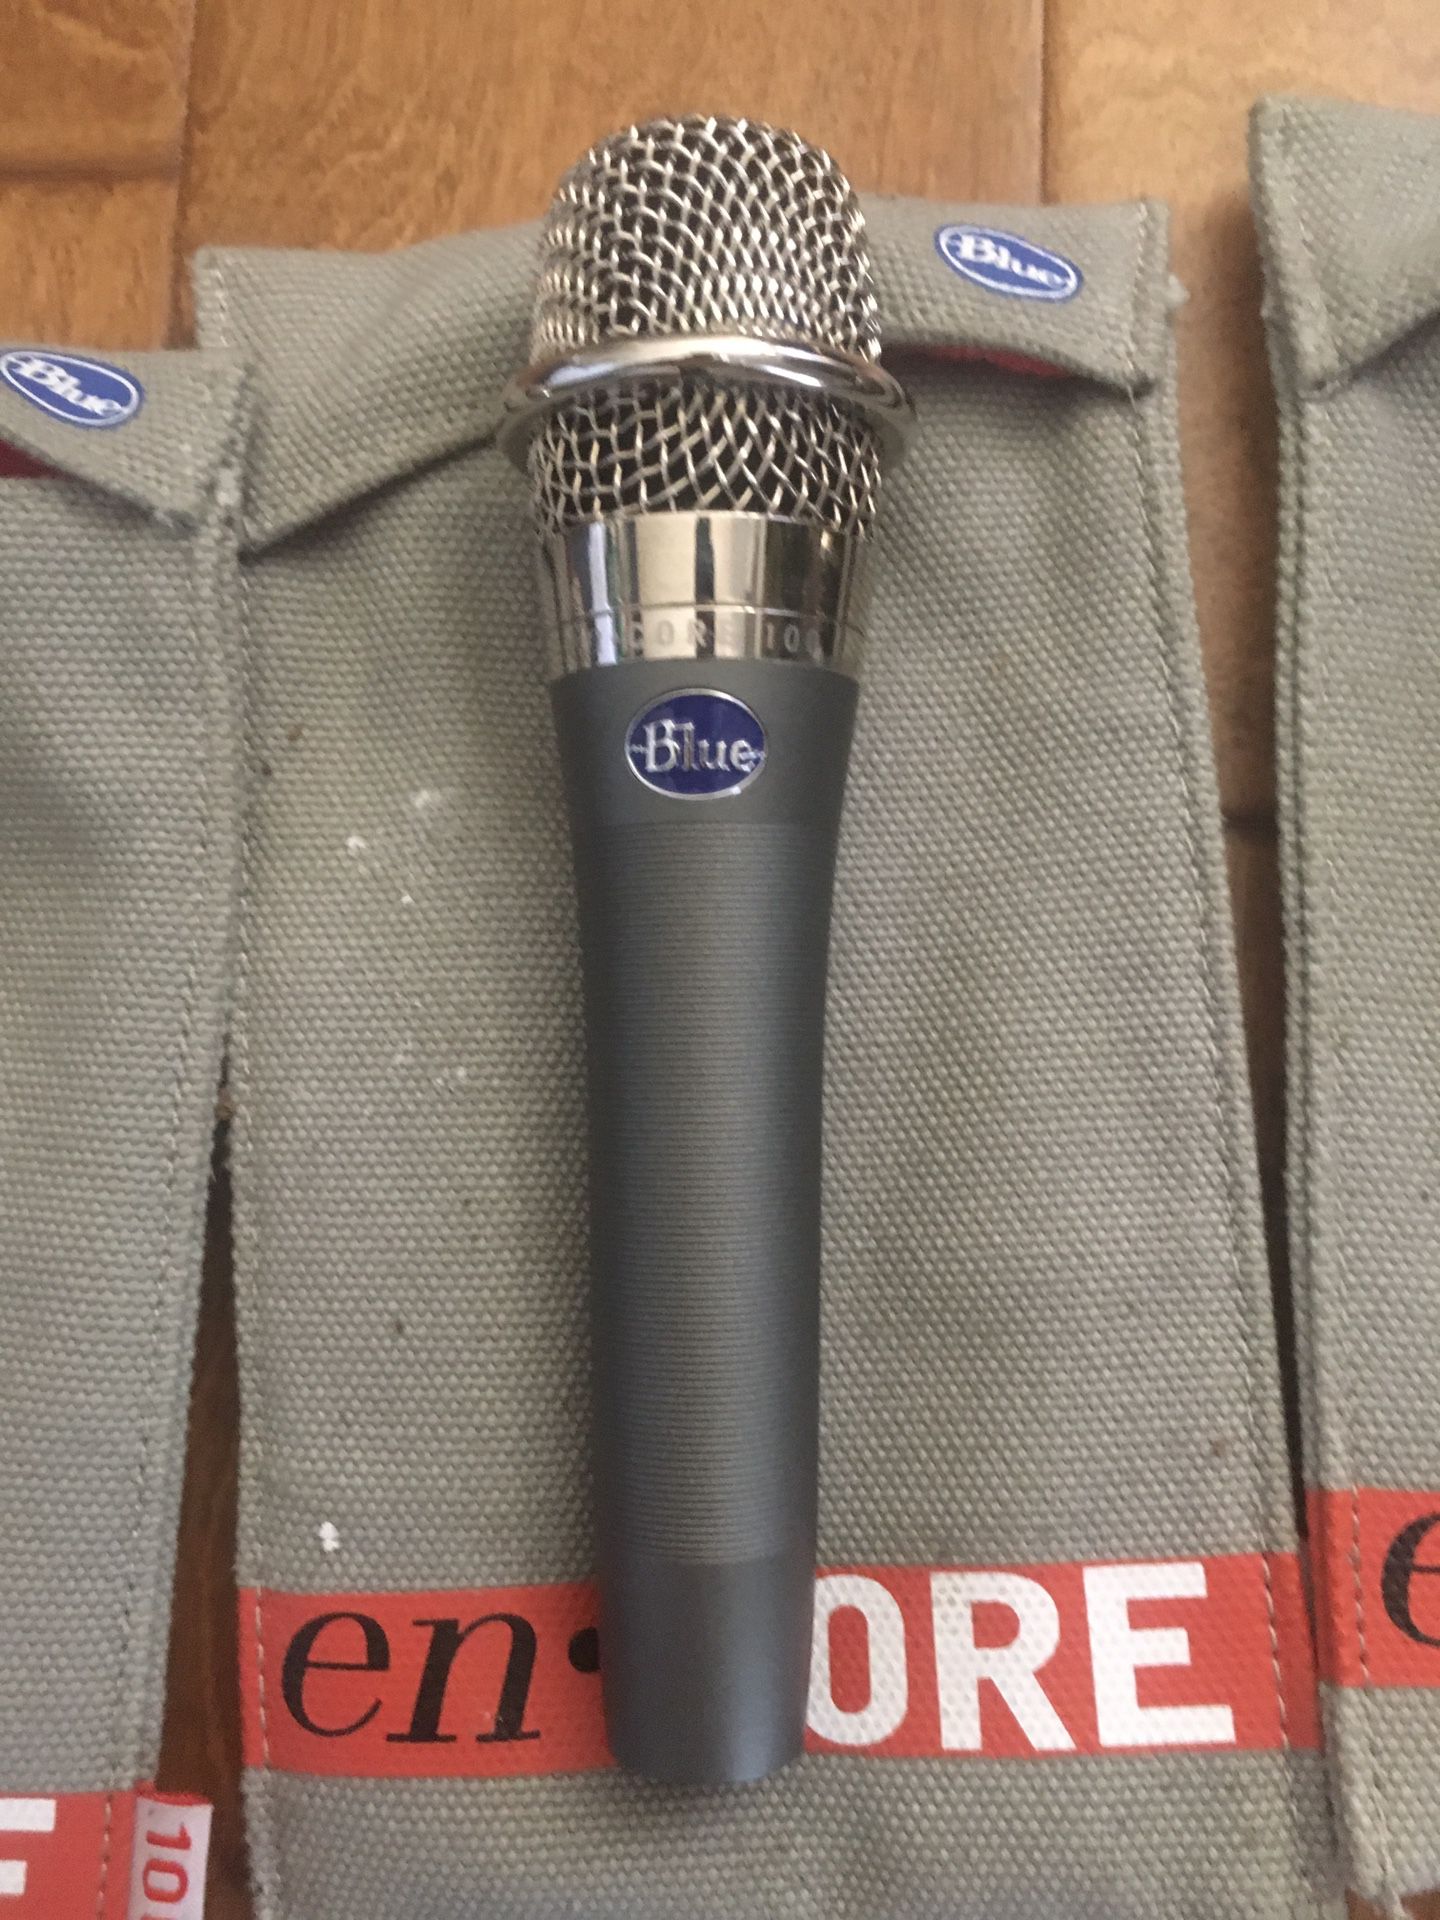 3 Blue Encore 100 dynamic mics for sale